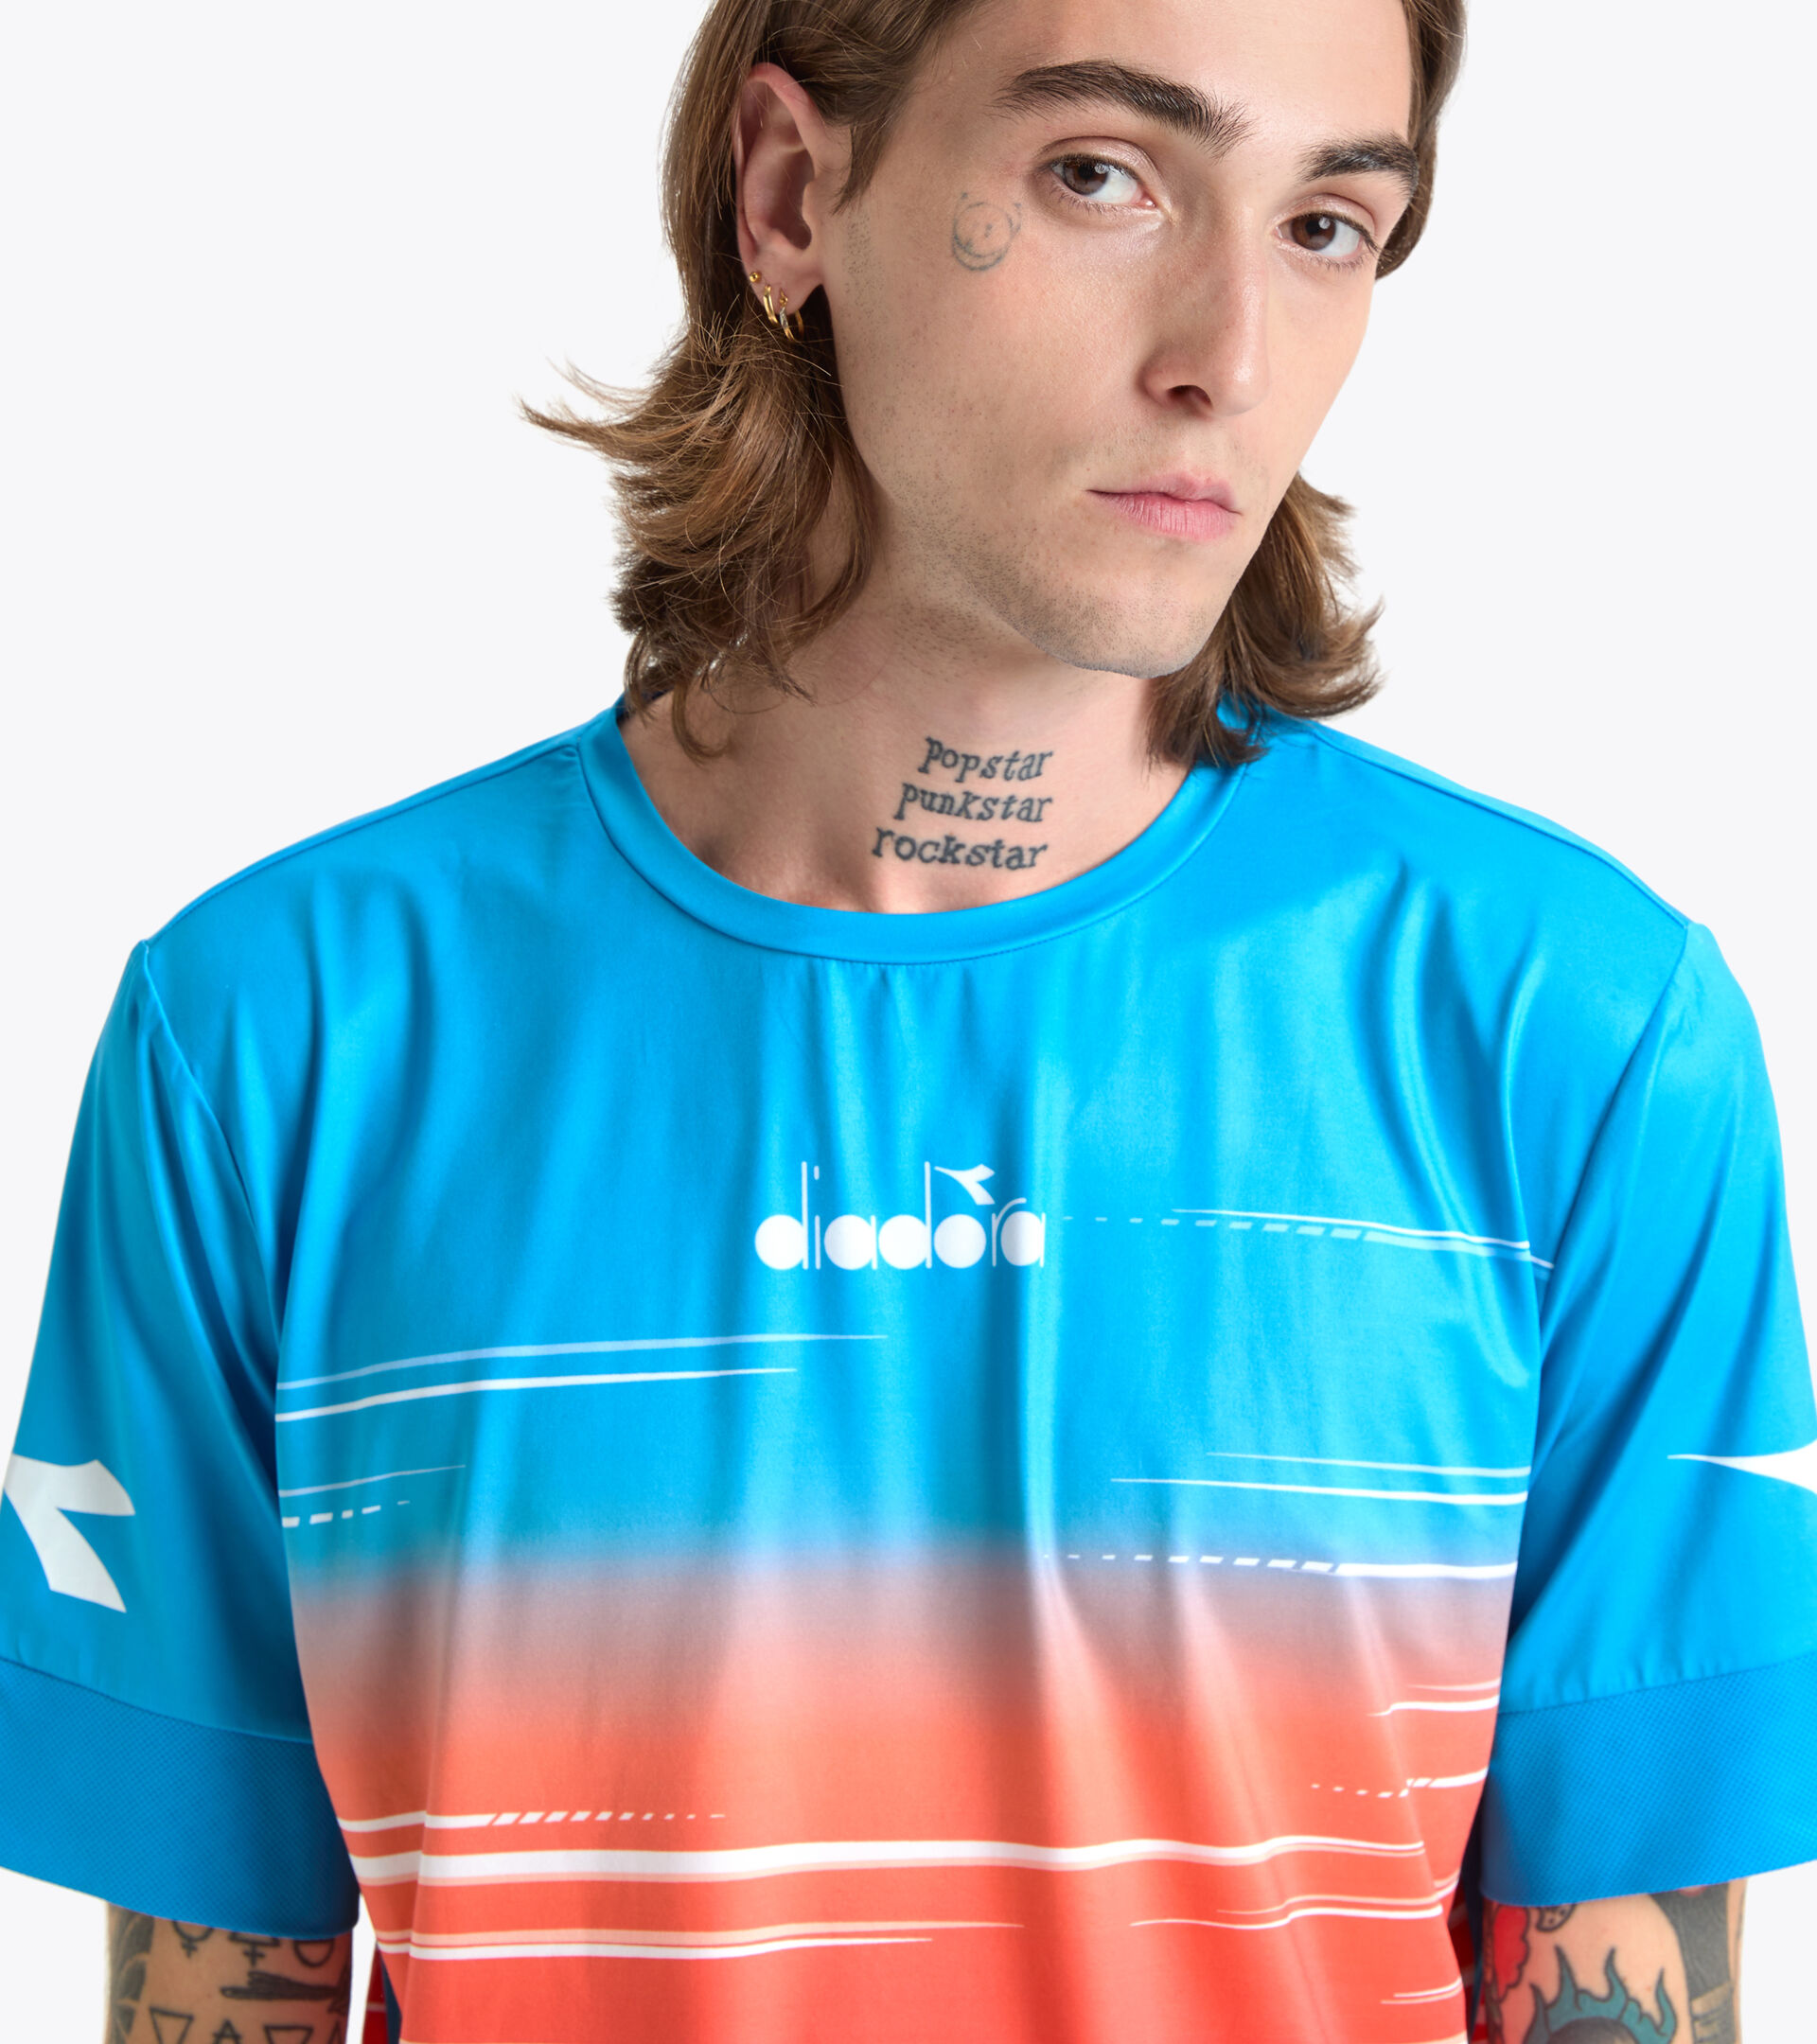 T-SHIRT COURT Camiseta de tenis - Hombre - Tienda en línea Diadora MX